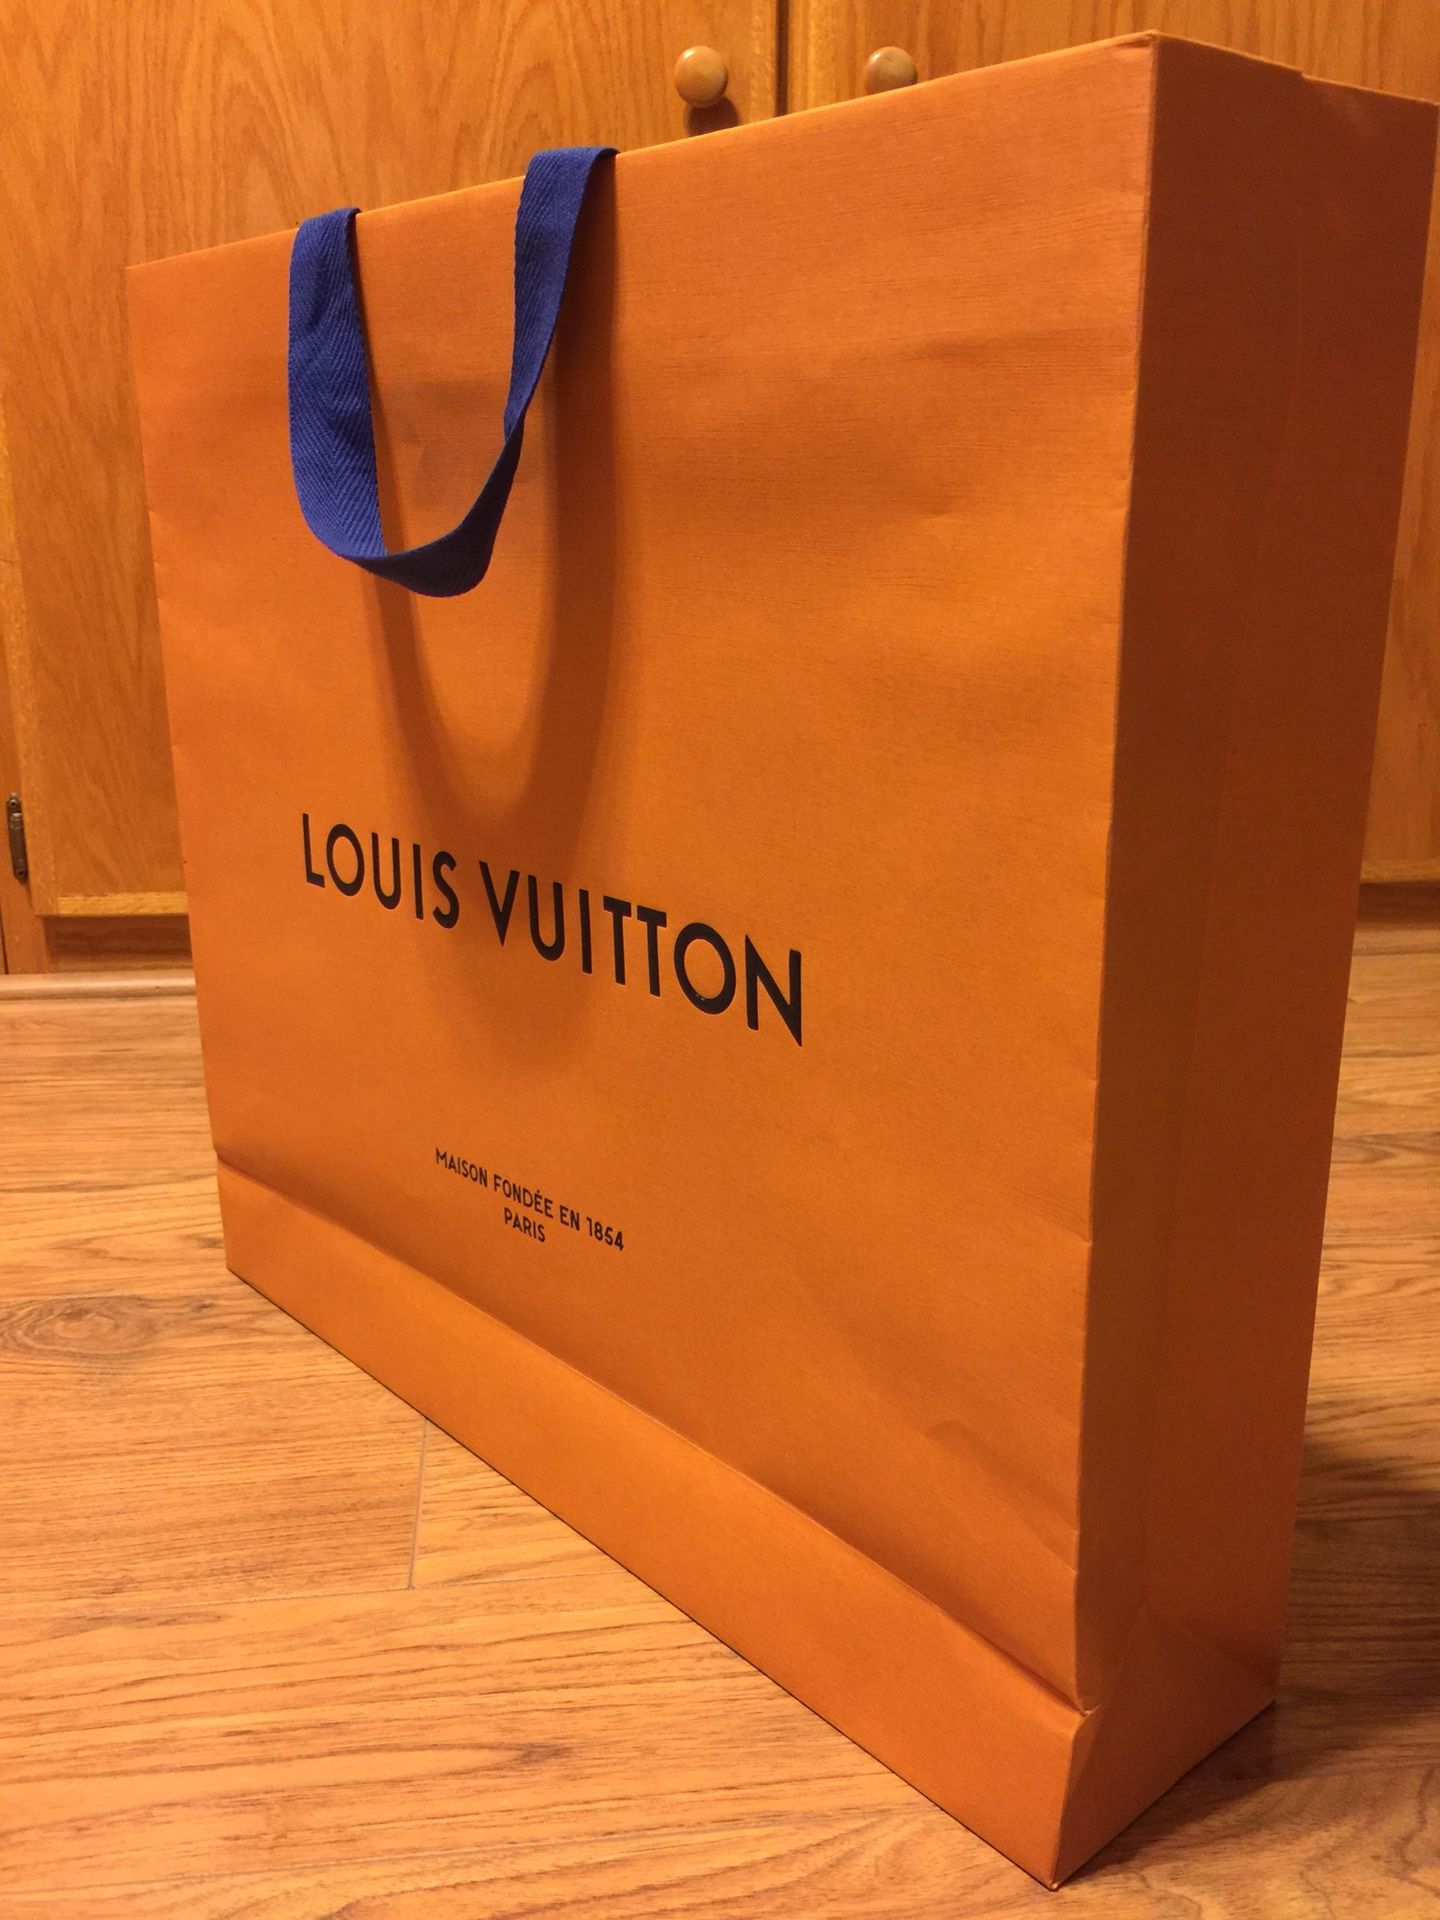 Sold authentic Louis Vuitton paper bag